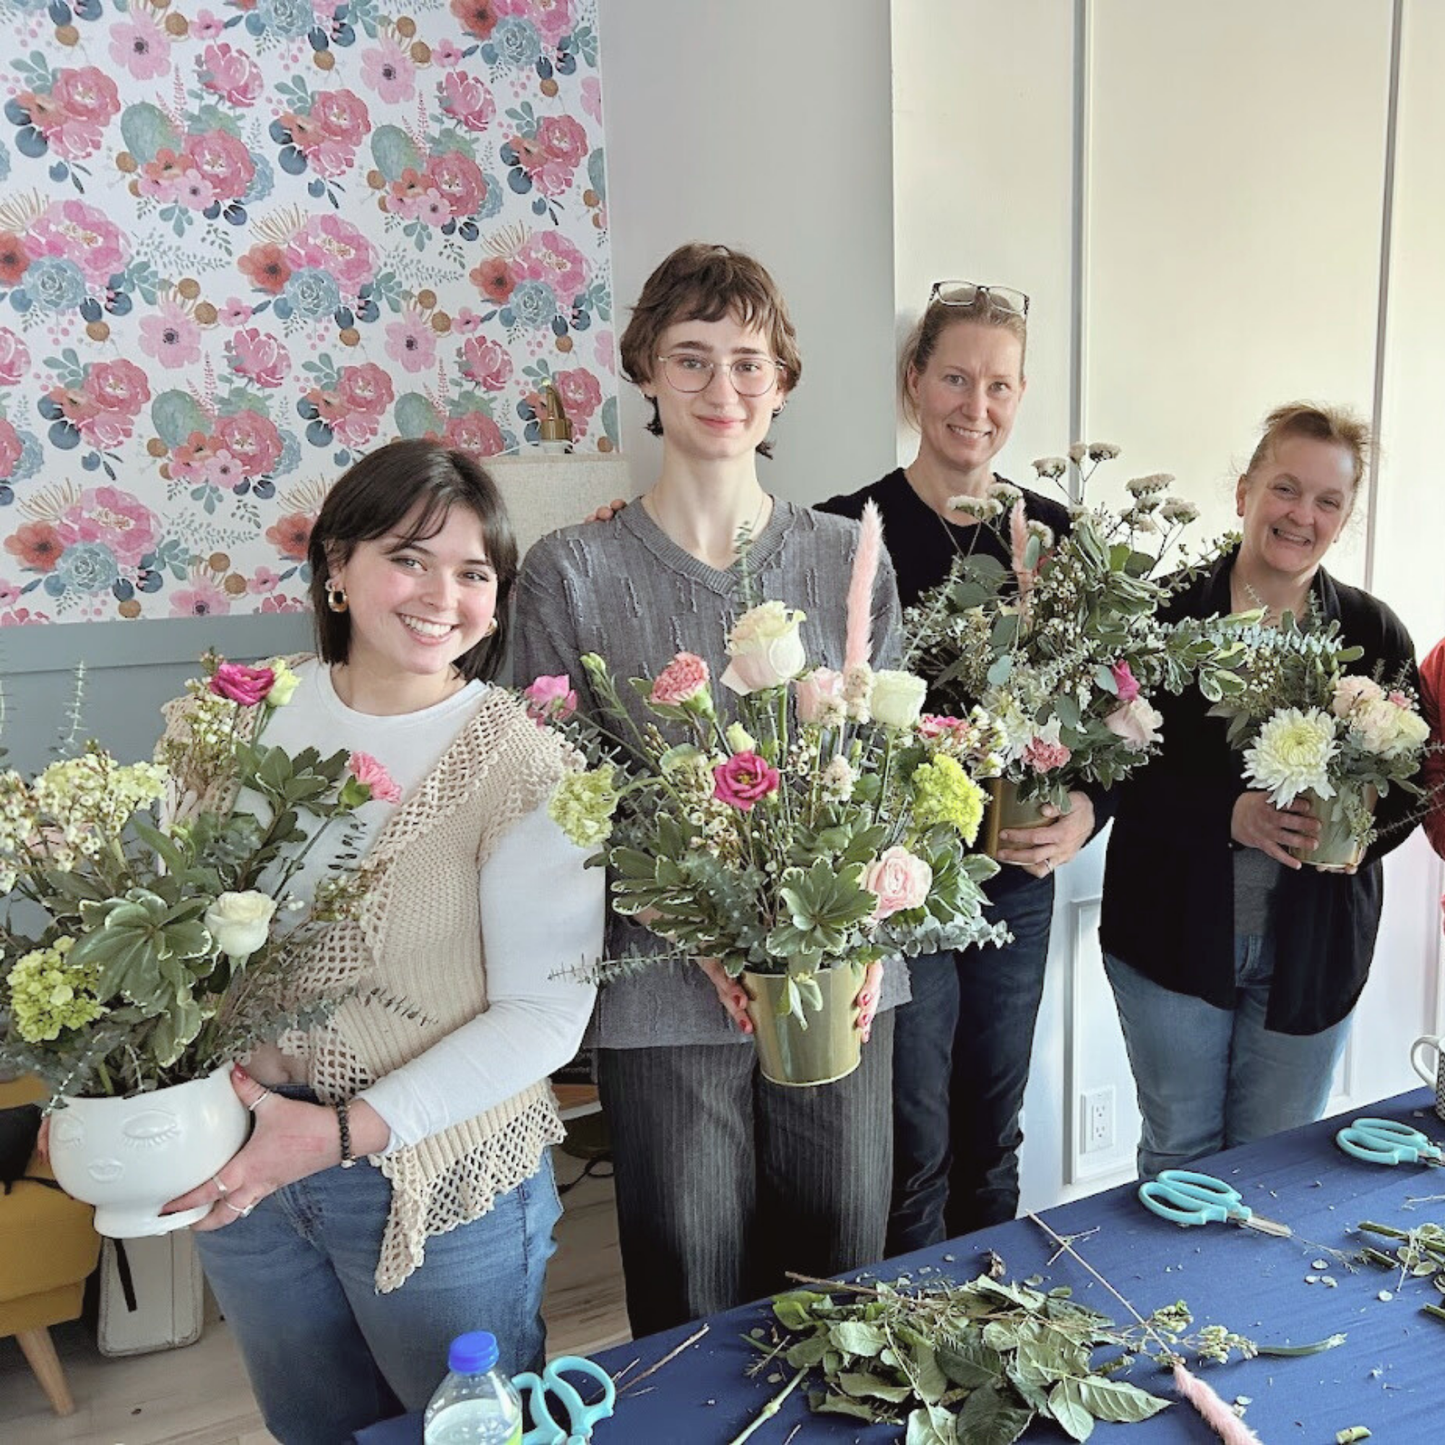 Flower arranging workshop